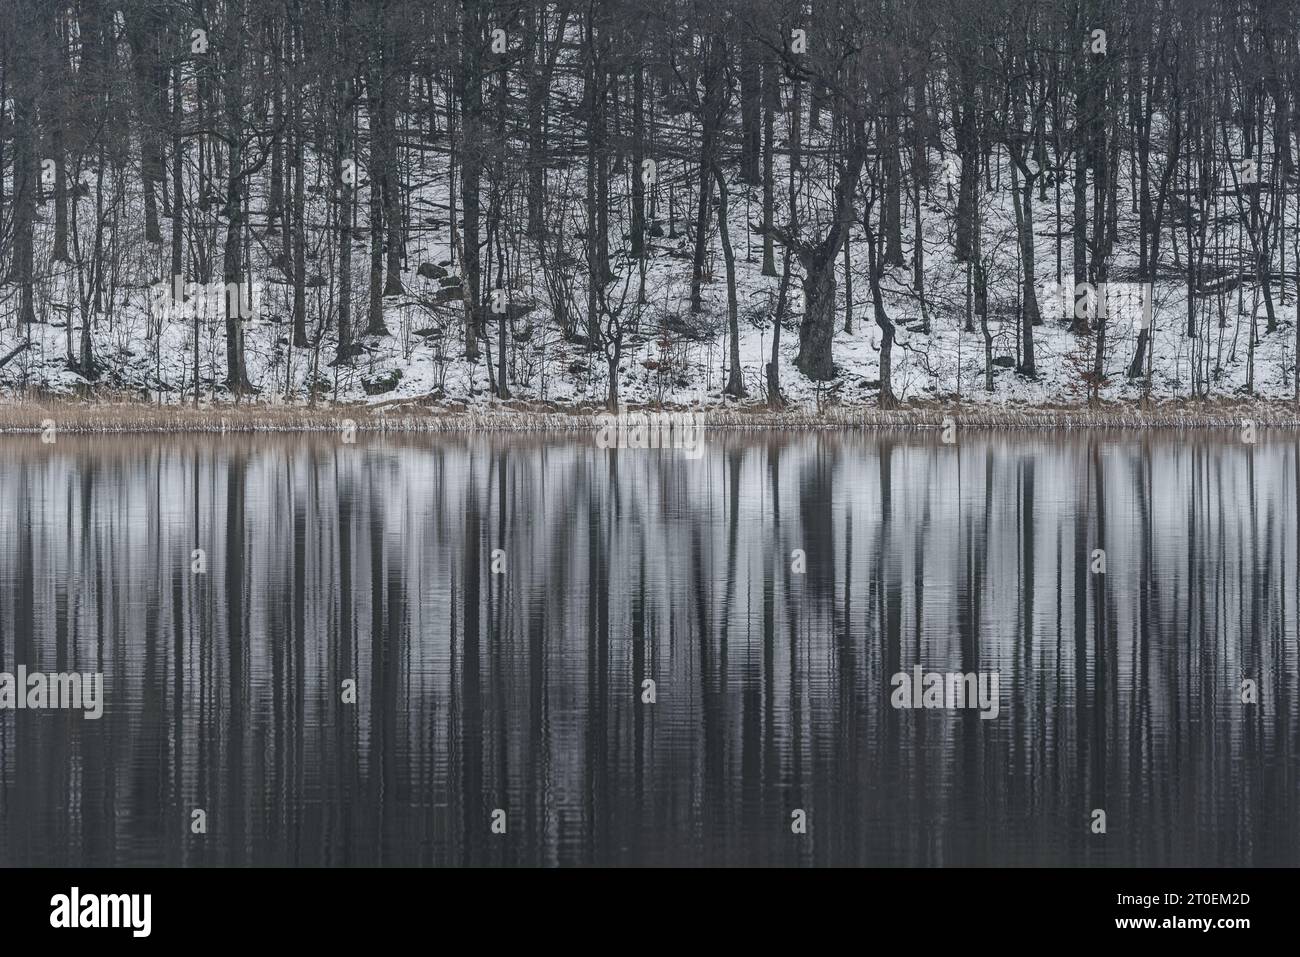 Winterliche Ruhe in einer schneebedeckten schwedischen Landschaft mit Bäumen, die sich auf einem ruhigen See spiegeln. Stockfoto